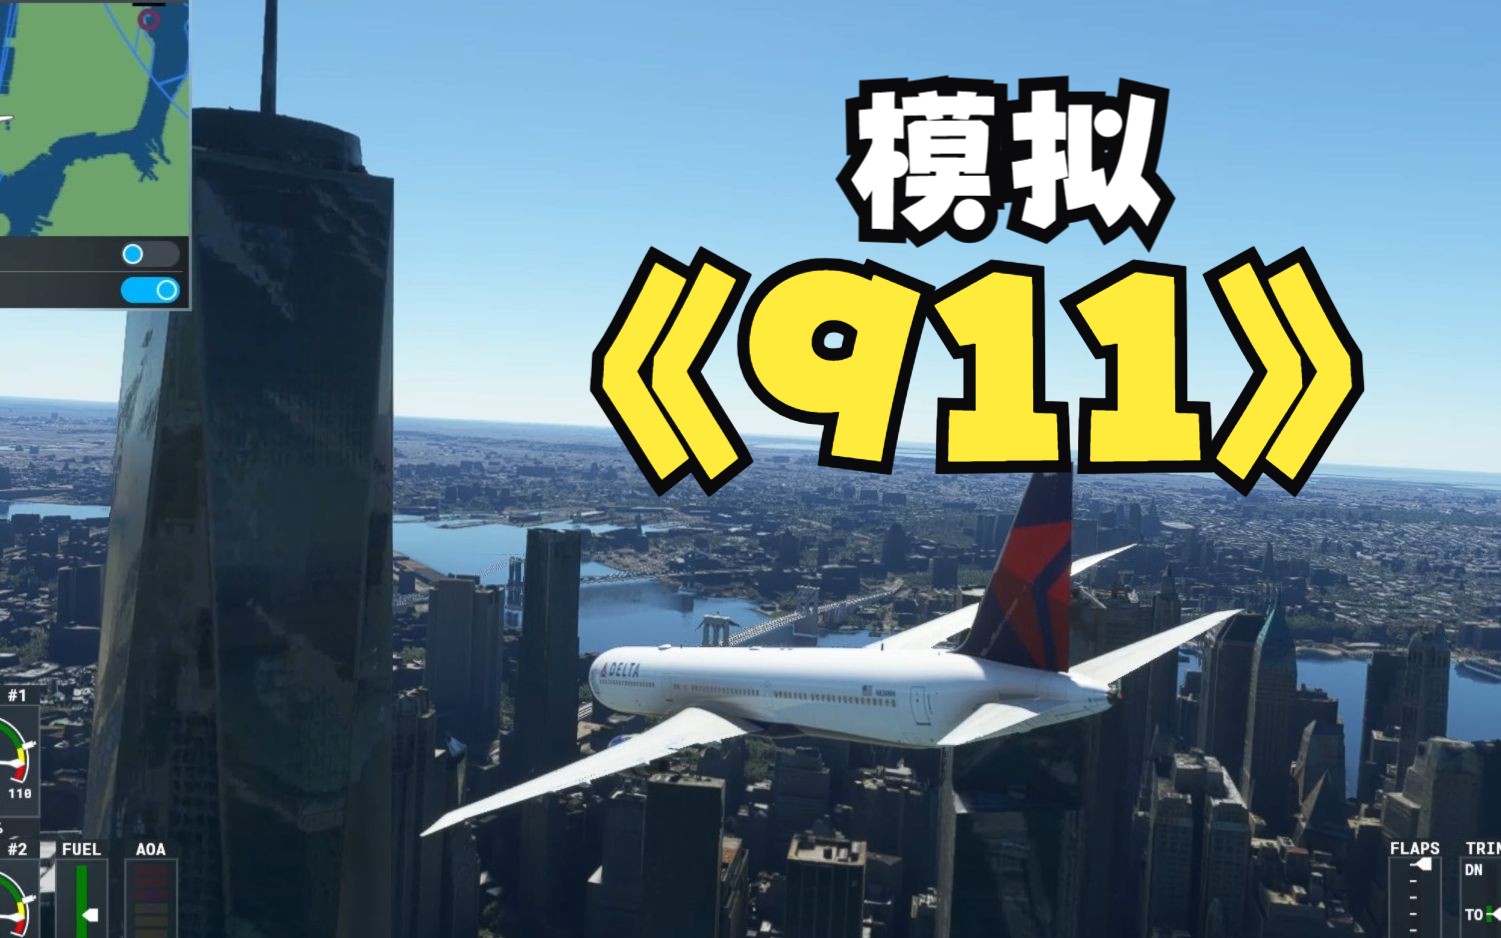 模拟911撞击世贸大厦事件  微软模拟飞行2020